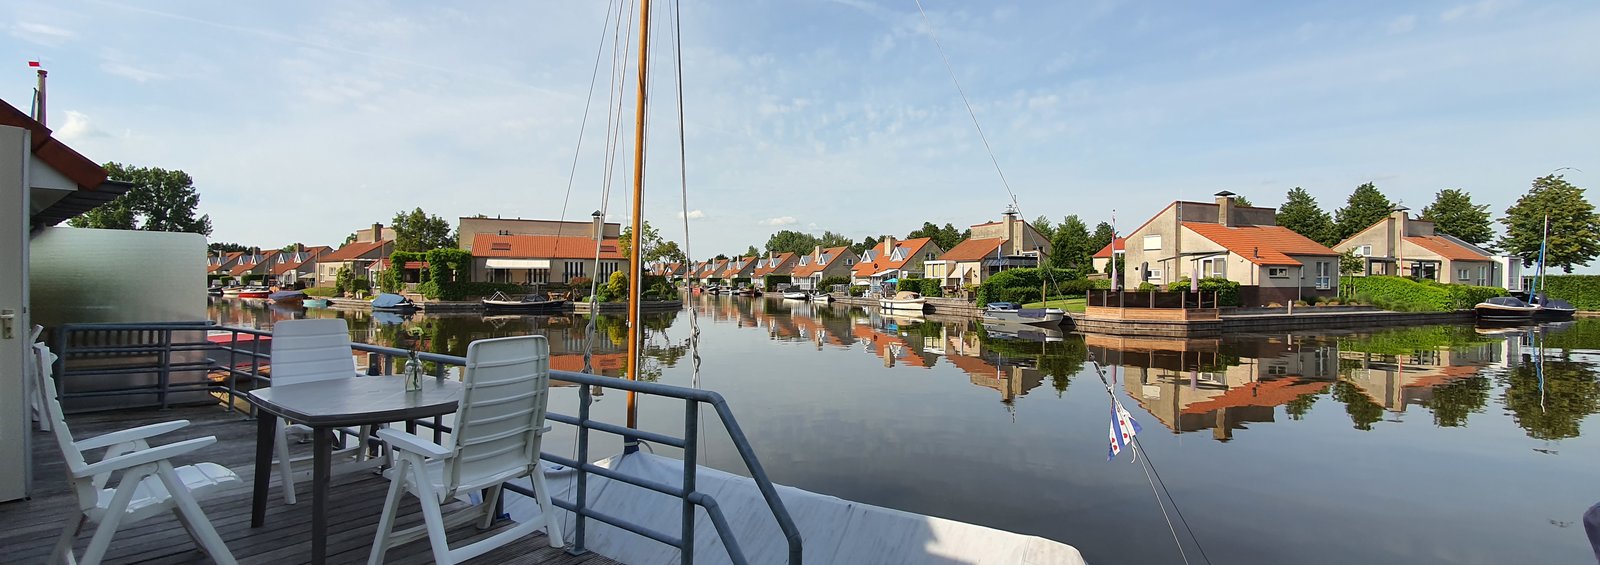 Vakantiepark in Friesland aan het water